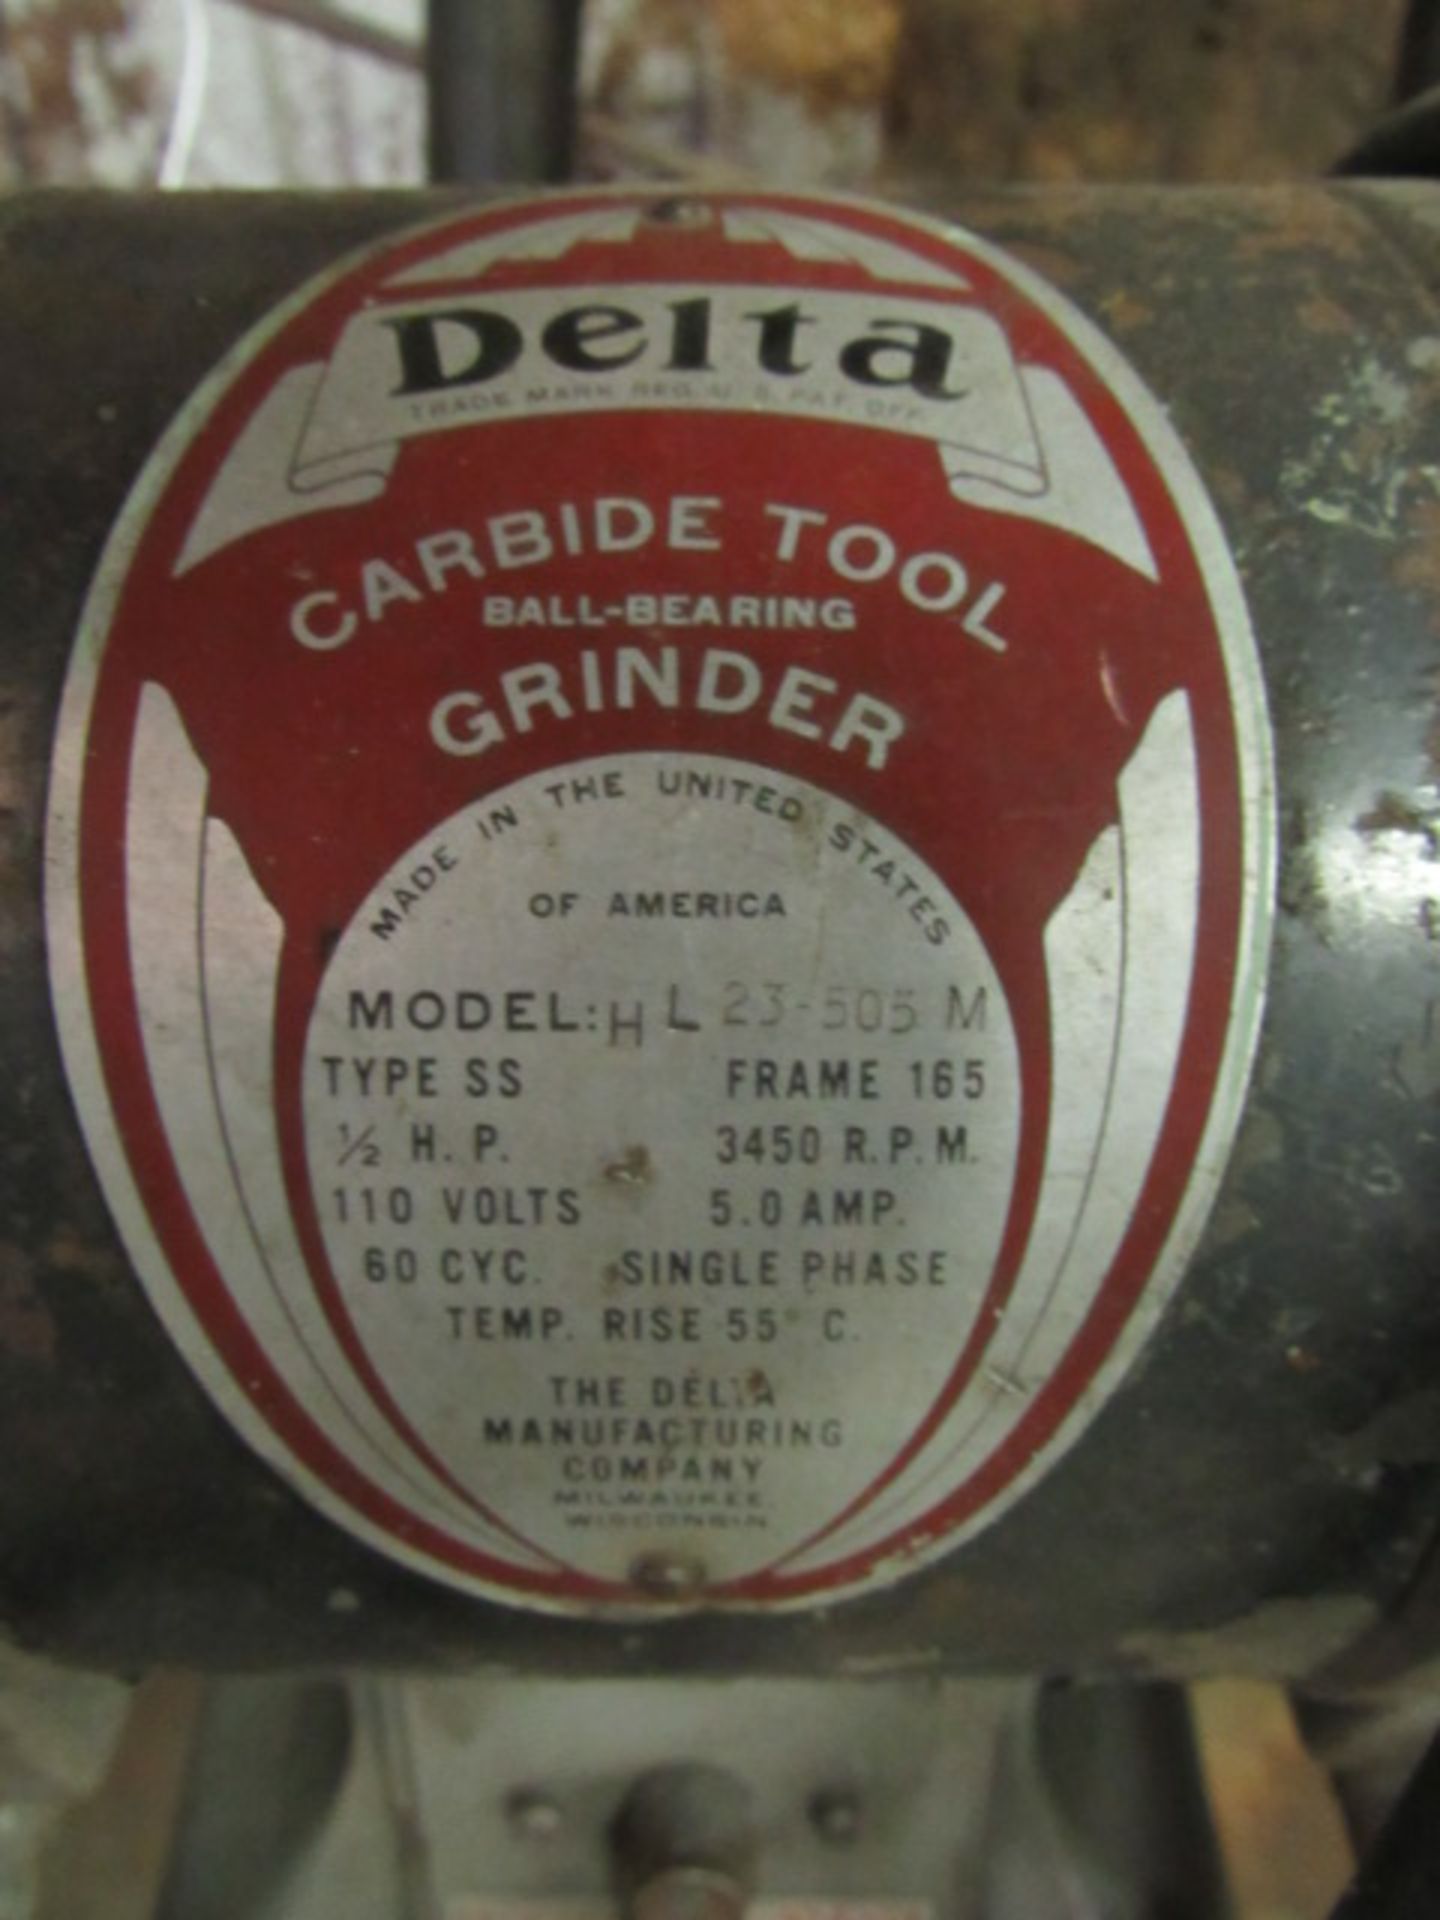 Delta Carbide Tool Grinder - Image 5 of 5